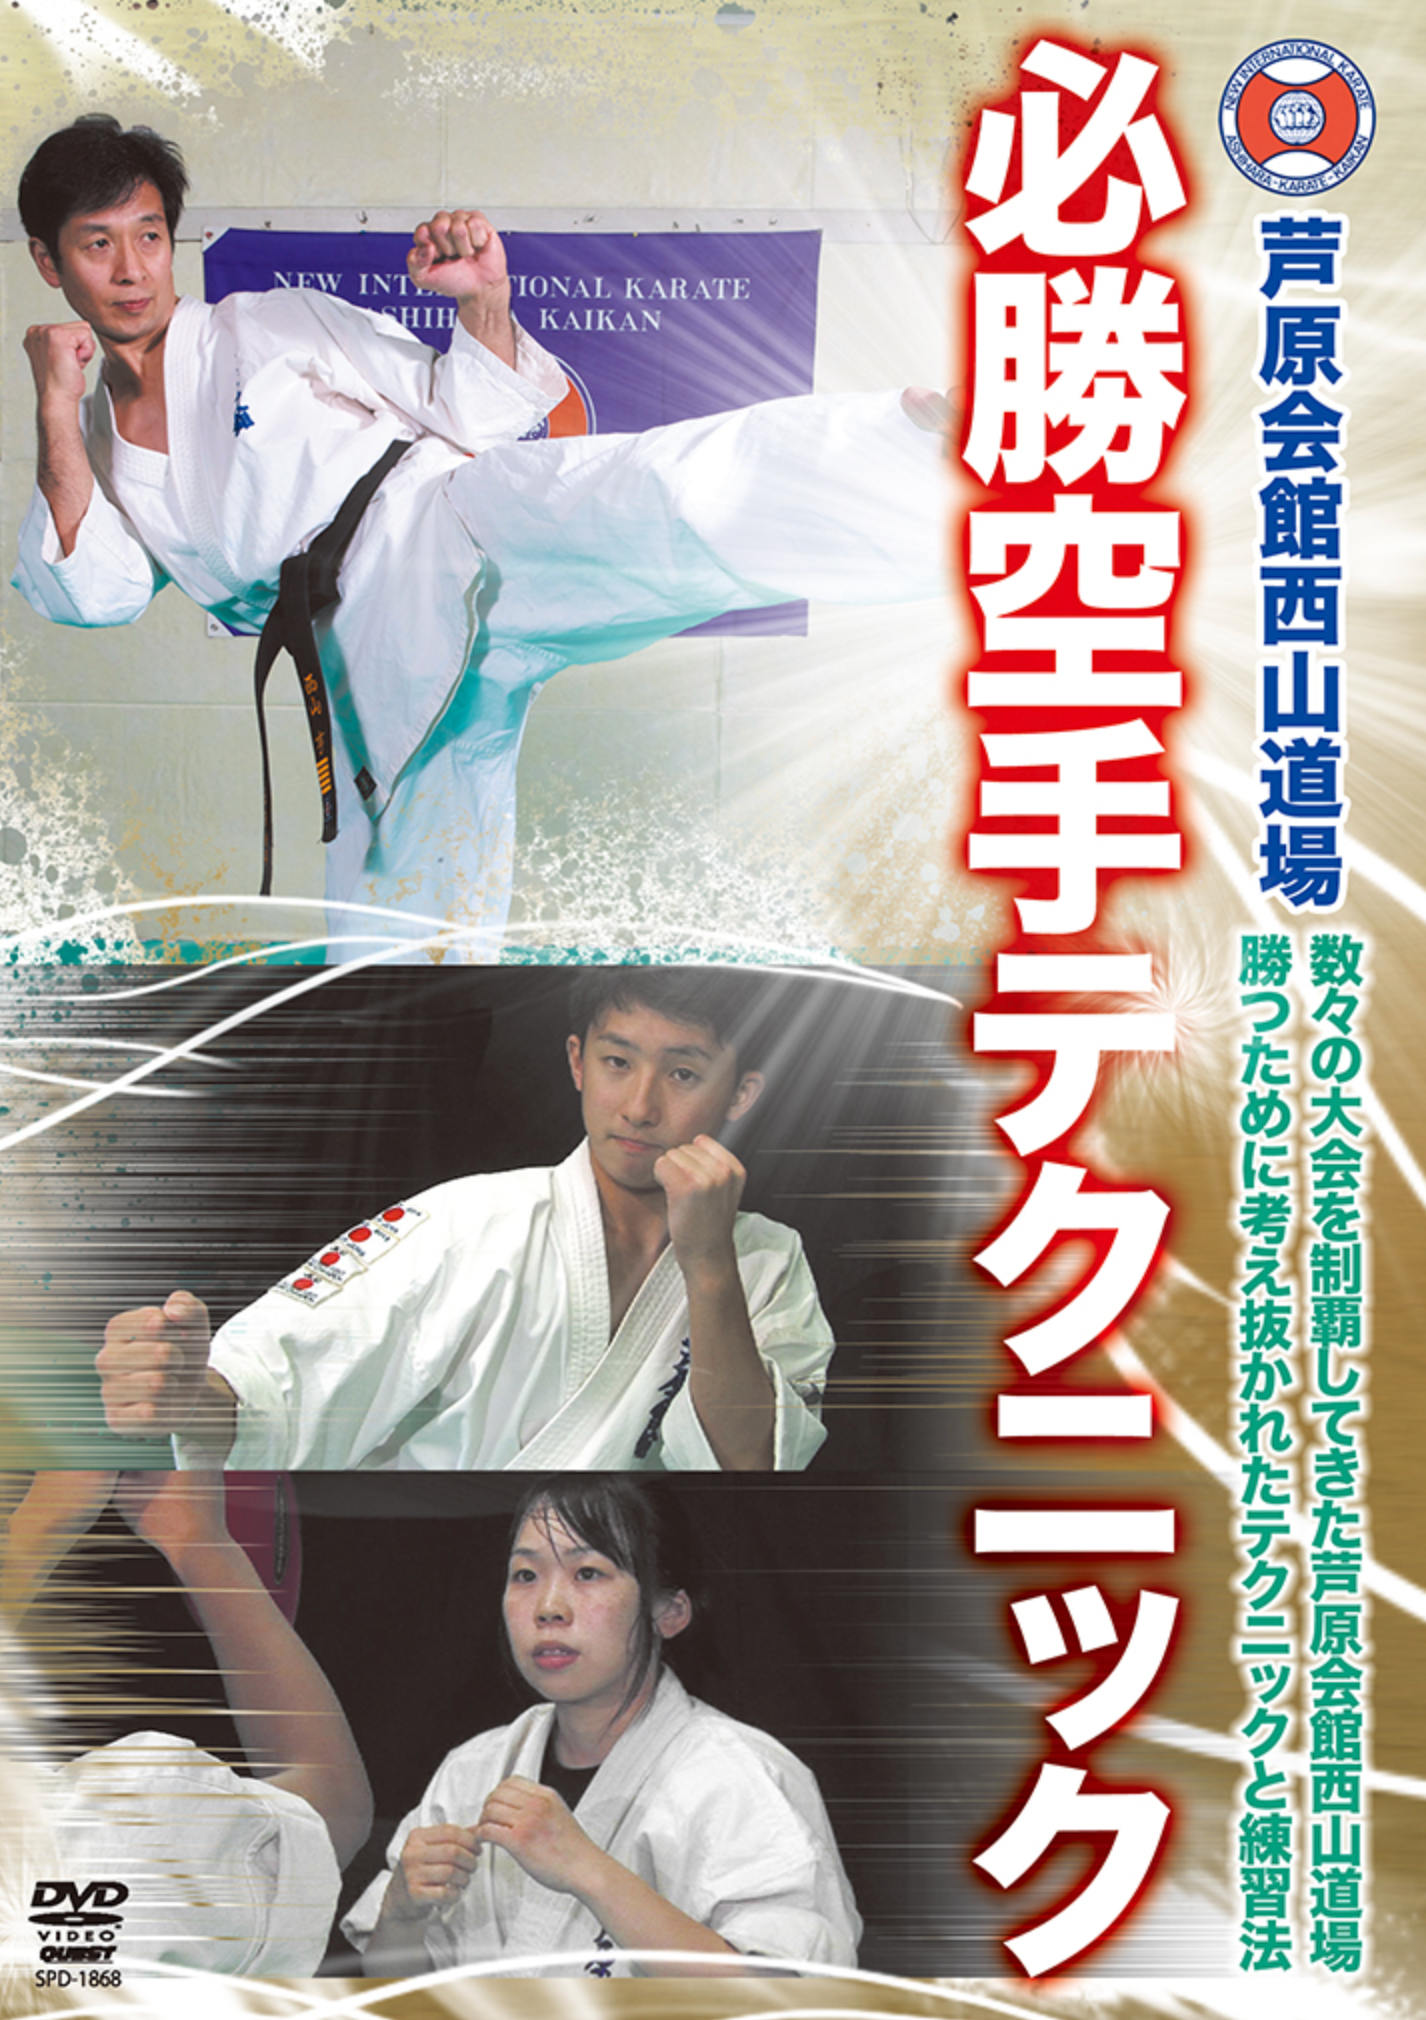 Ashihara Kaikan Nishiyama Dojo Winning Karate Techniques DVD by Toru Nishiyama - Budovideos